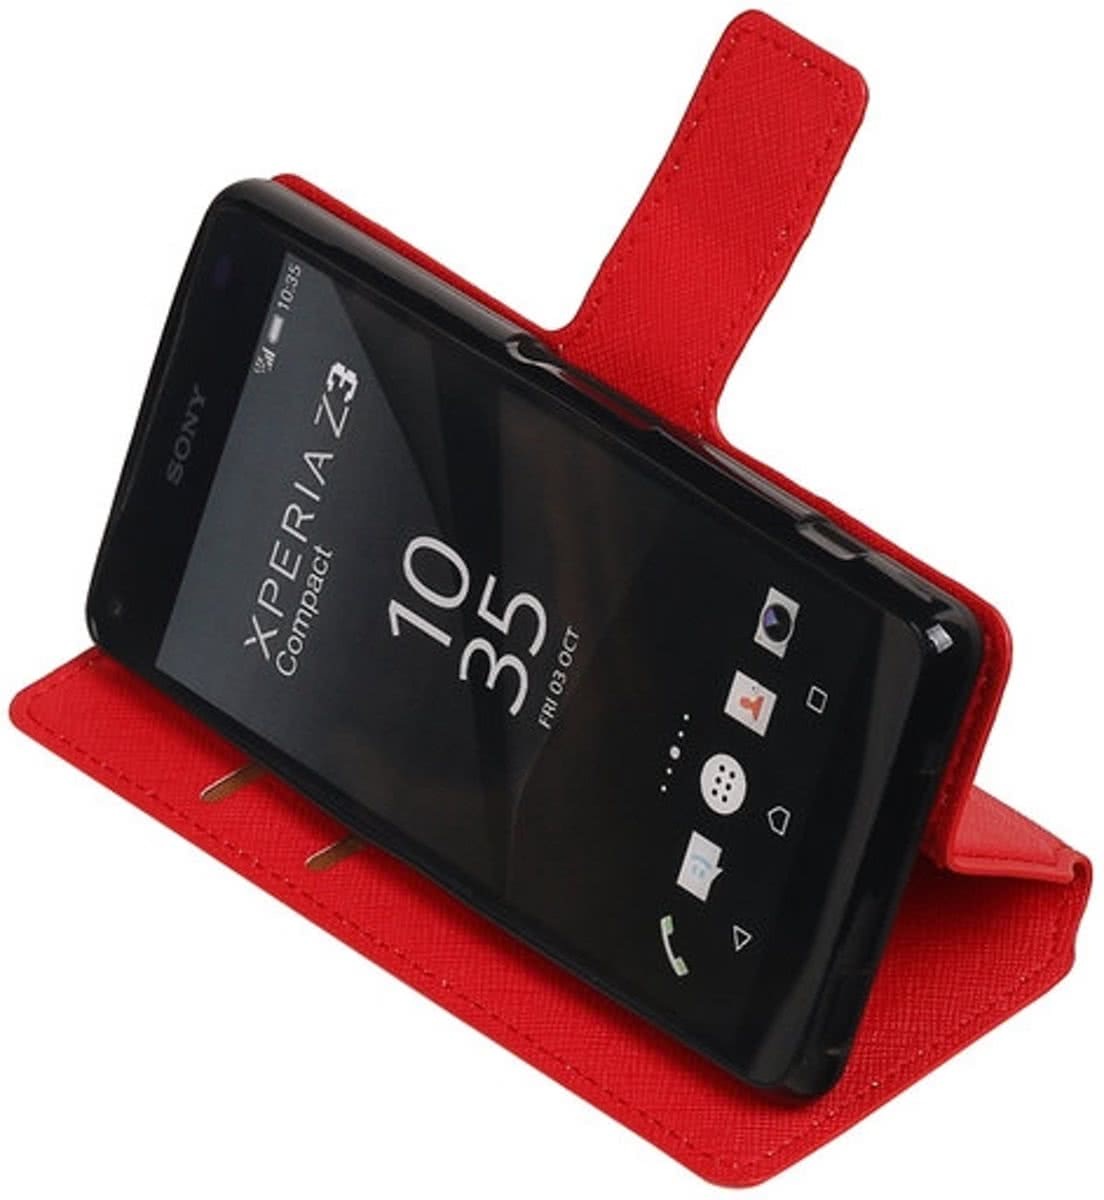 Best Cases .nl Rood Sony Xperia Z3 TPU wallet case hoesje HM Book telefoonhoesje kopen? | Kieskeurig.nl | helpt je kiezen